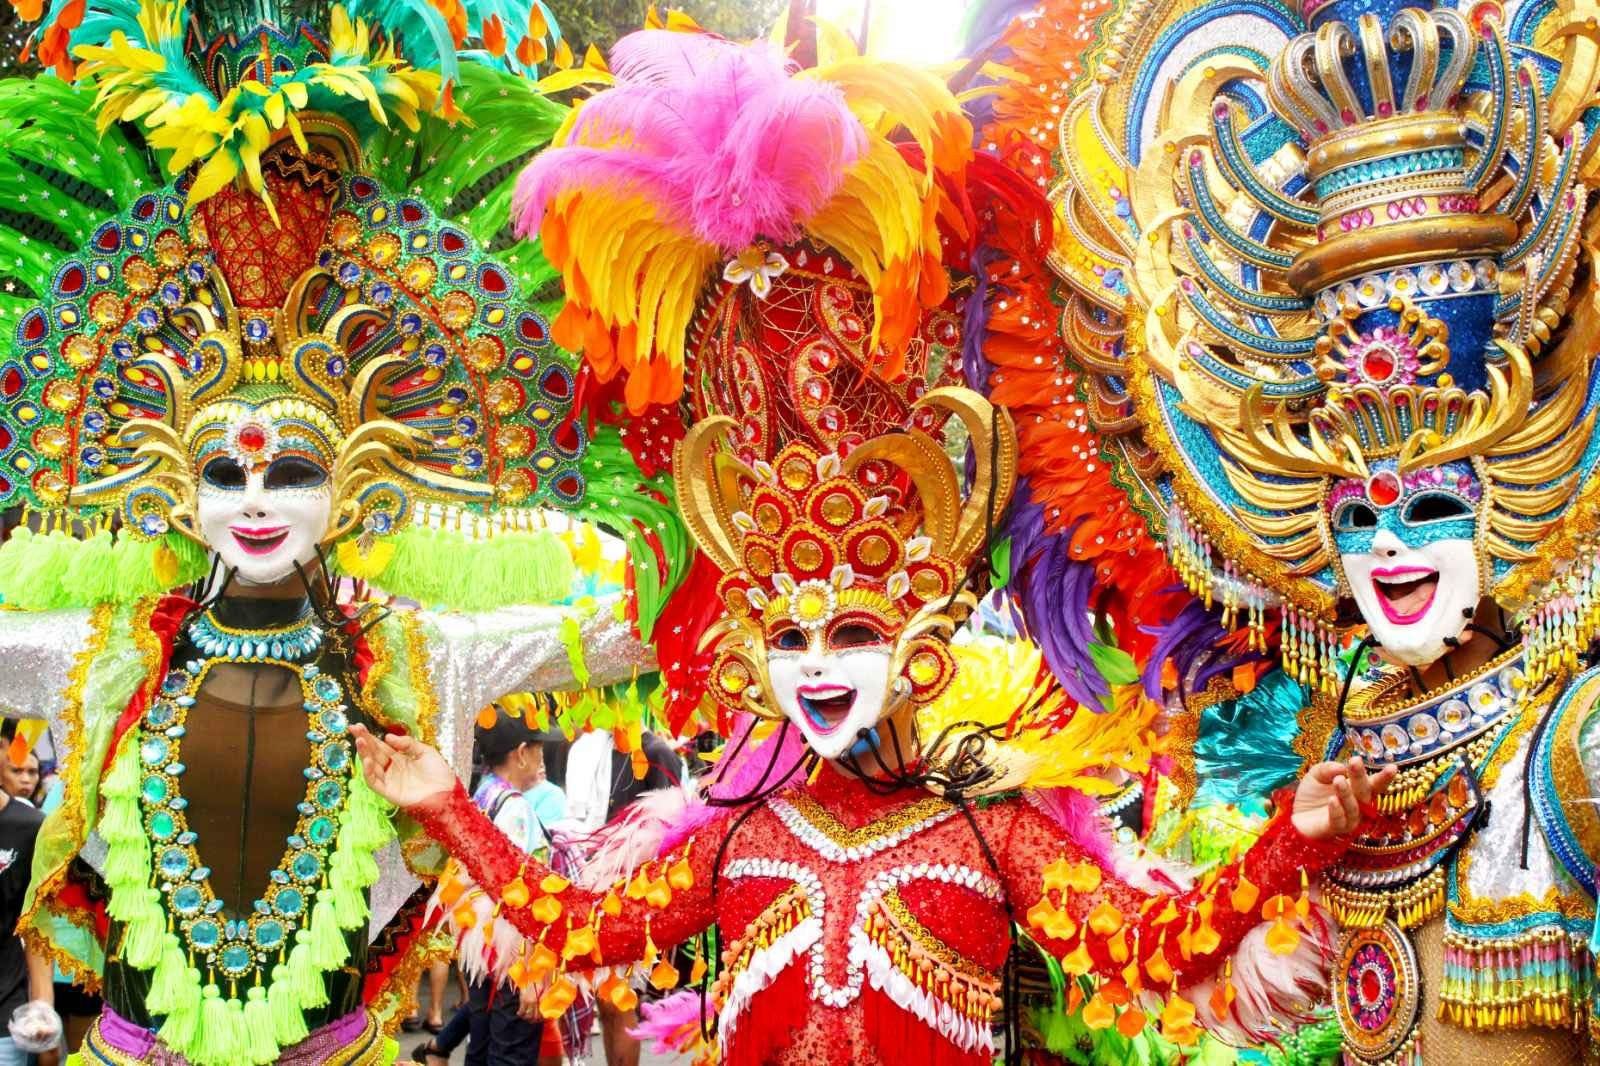 Bacolod's Granada MassKara dancers parading in Hong Kong for Chinese New Year